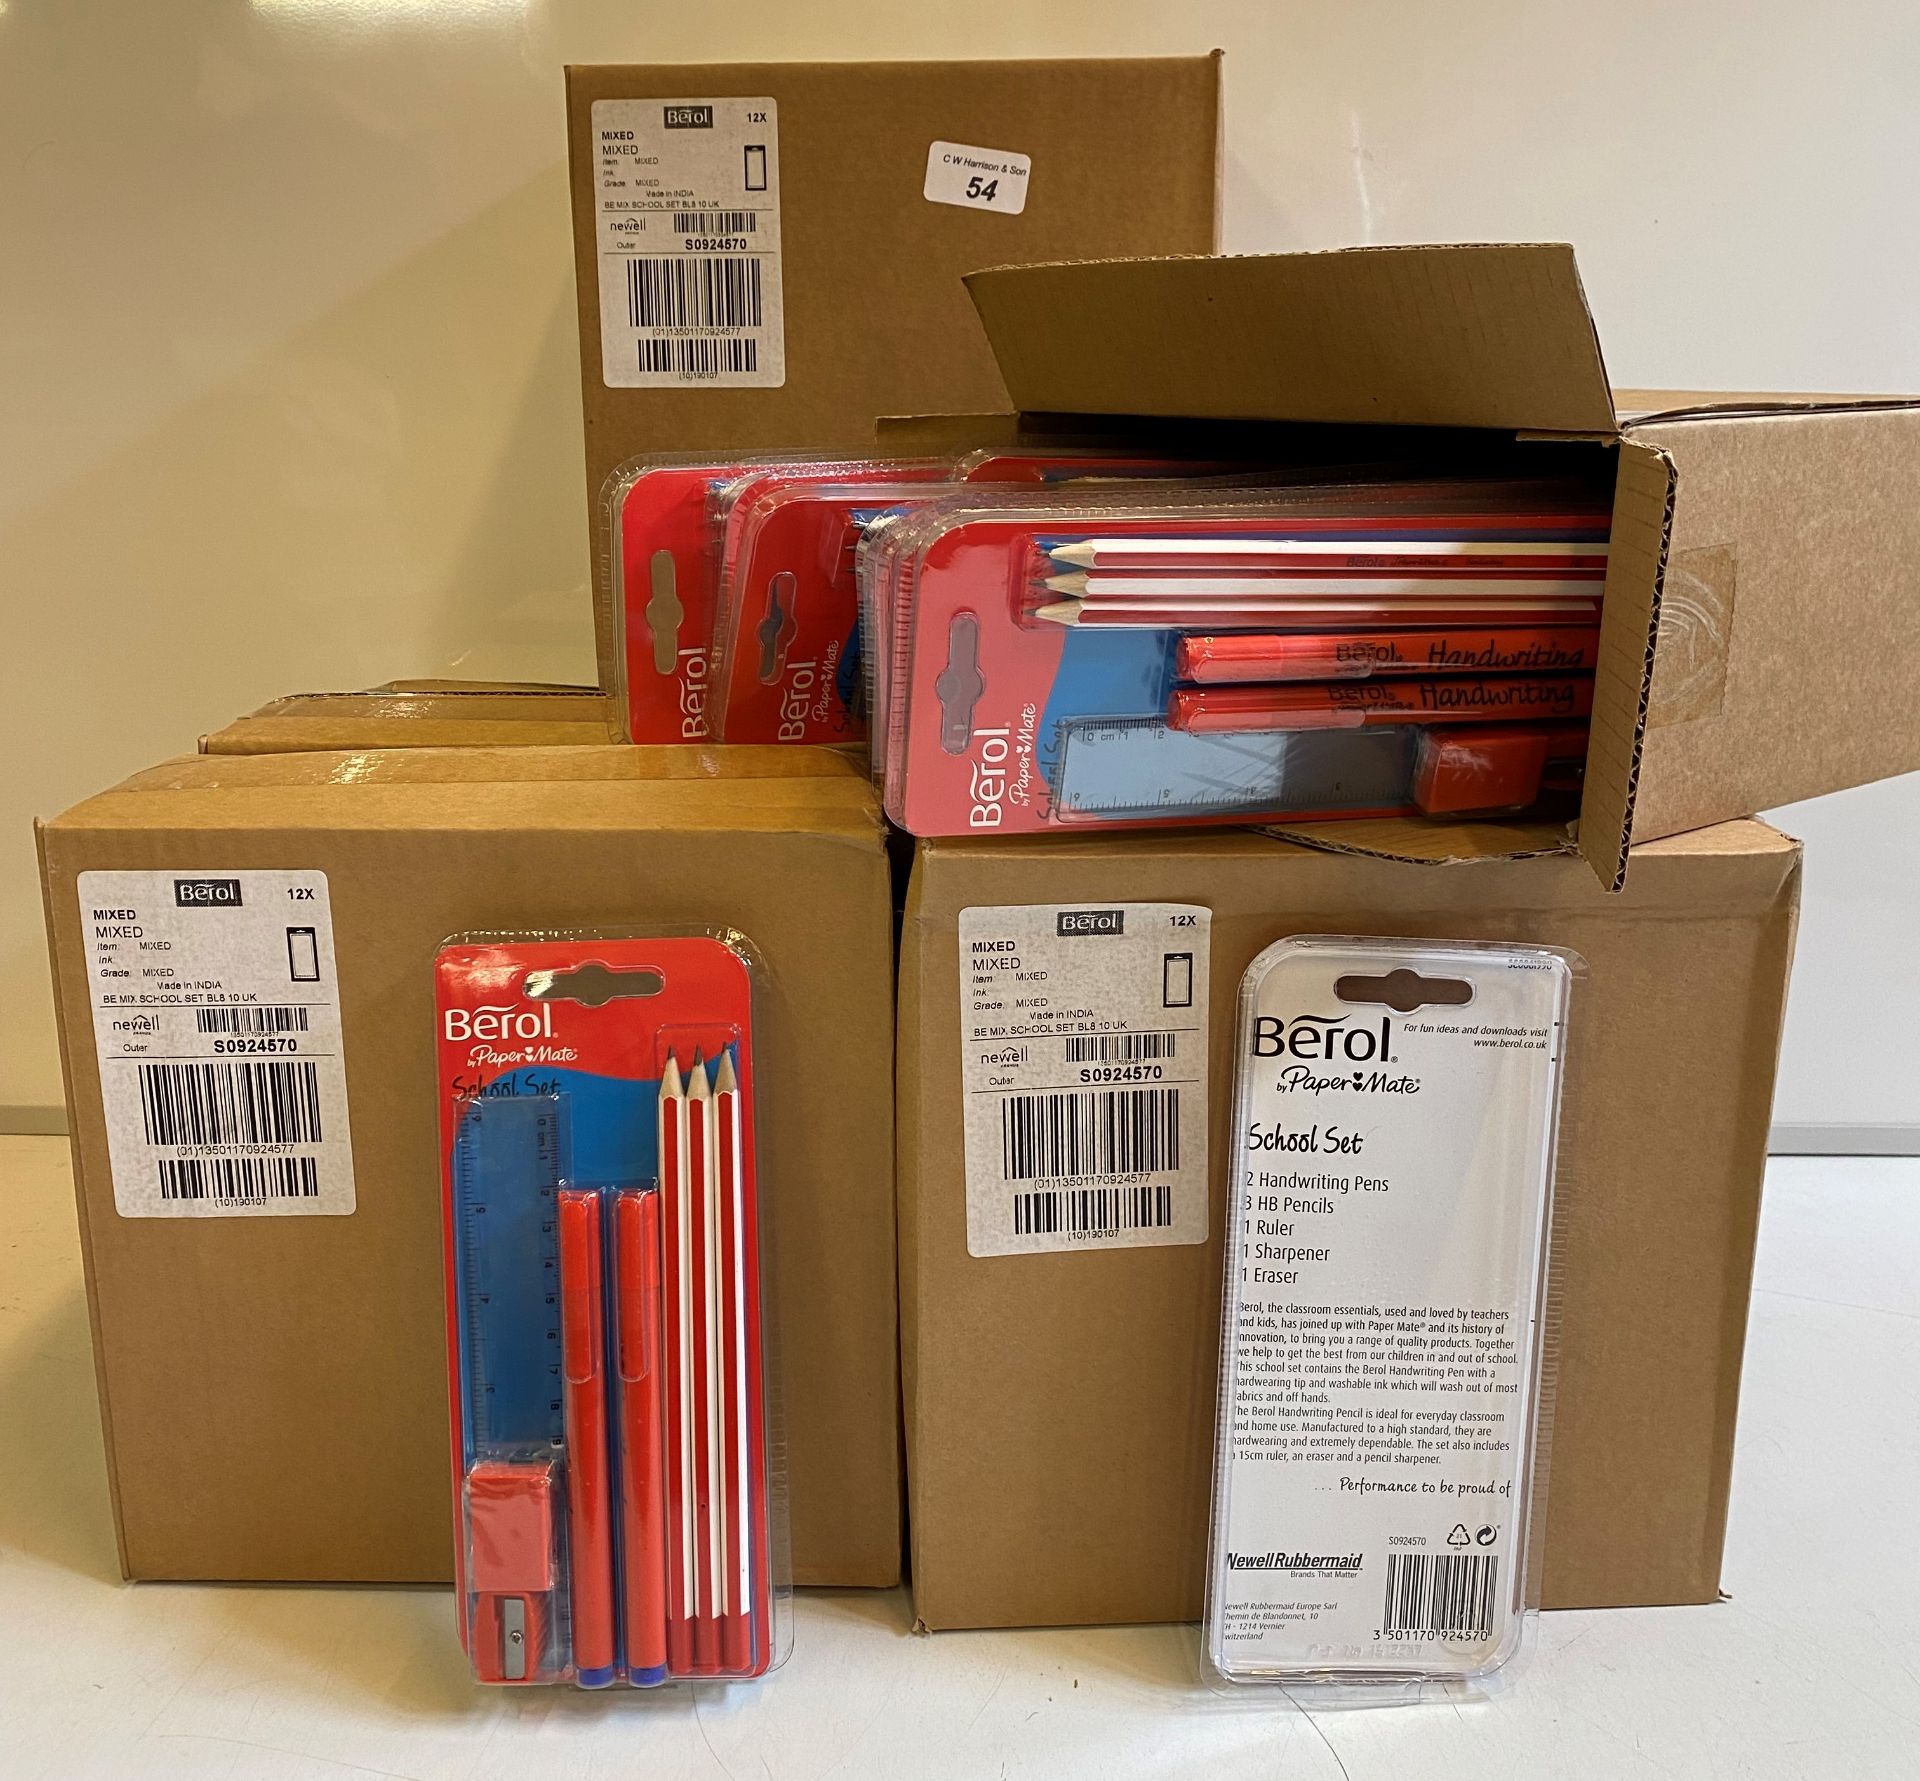 96 sets of Berol school essential set, pencil, eraser, sharpener, ruler,